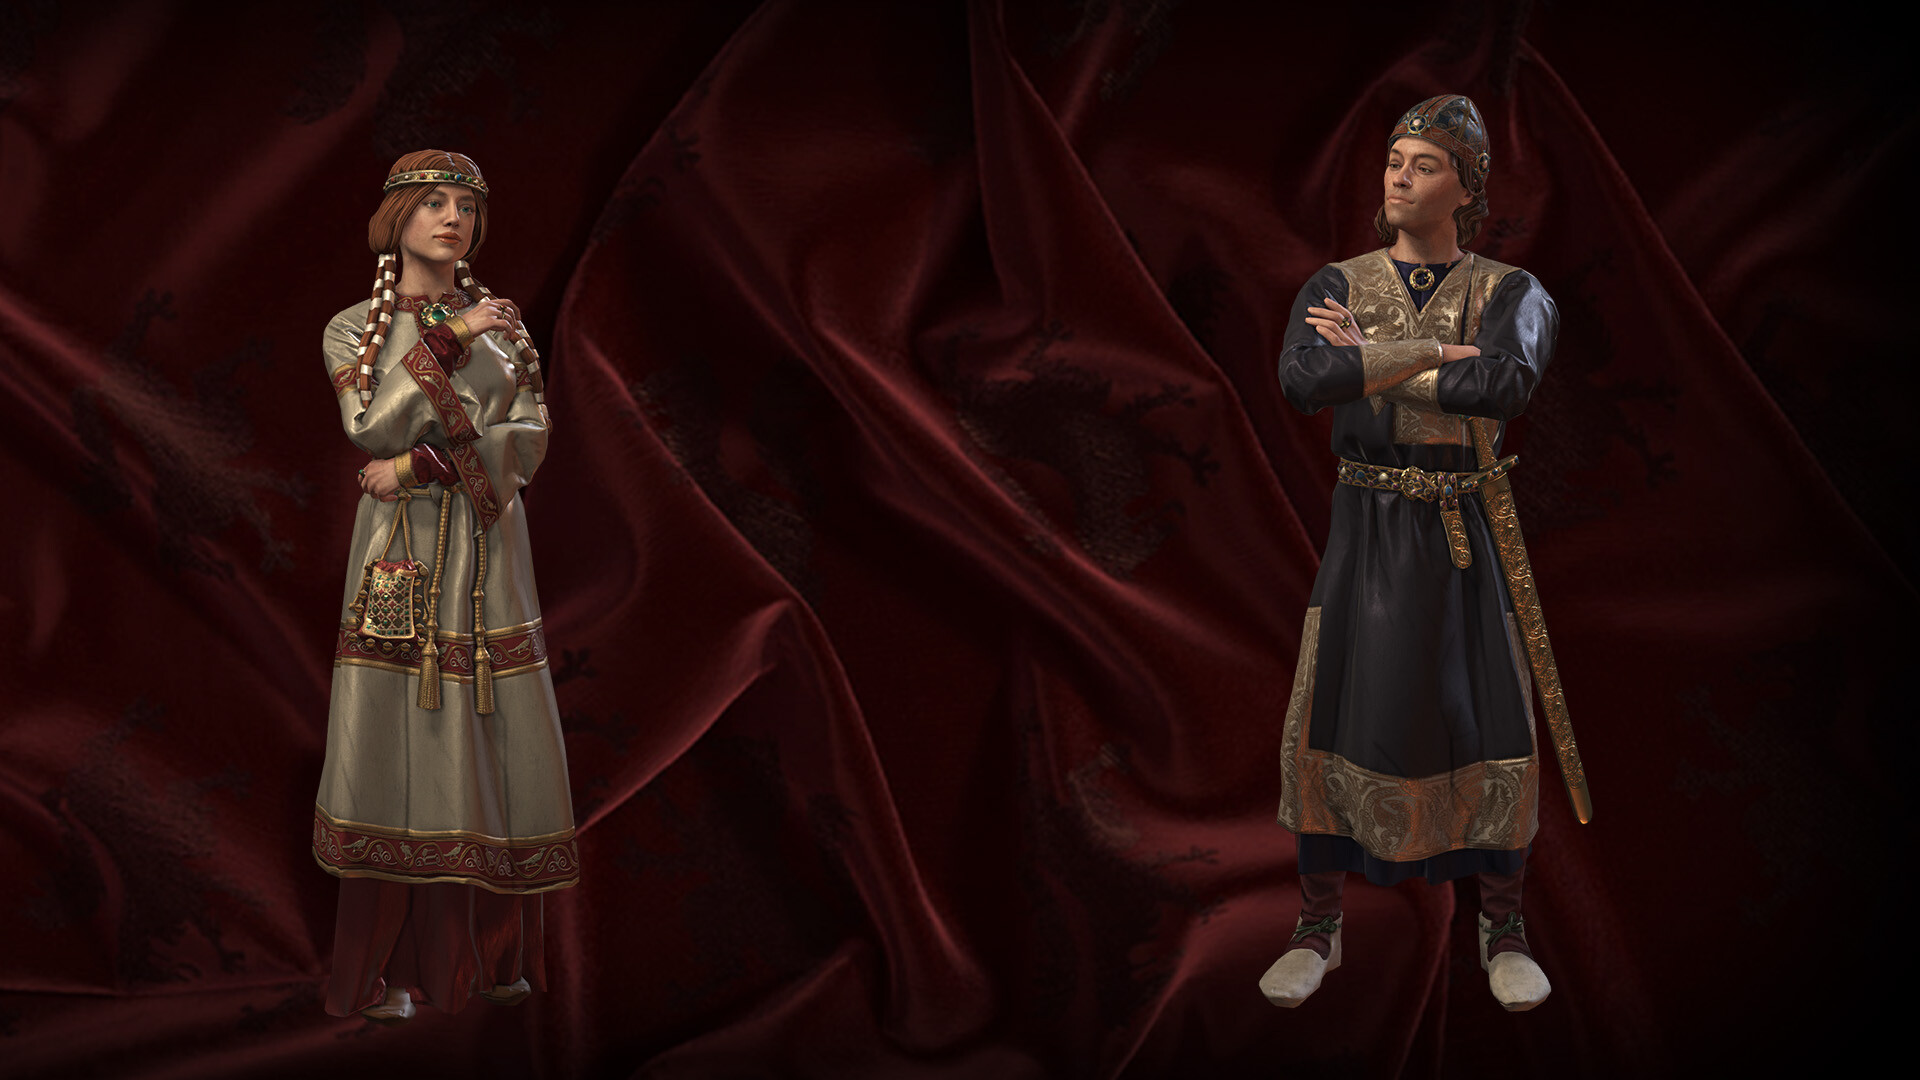 Crusader Kings III: Legacy of Persia on Steam